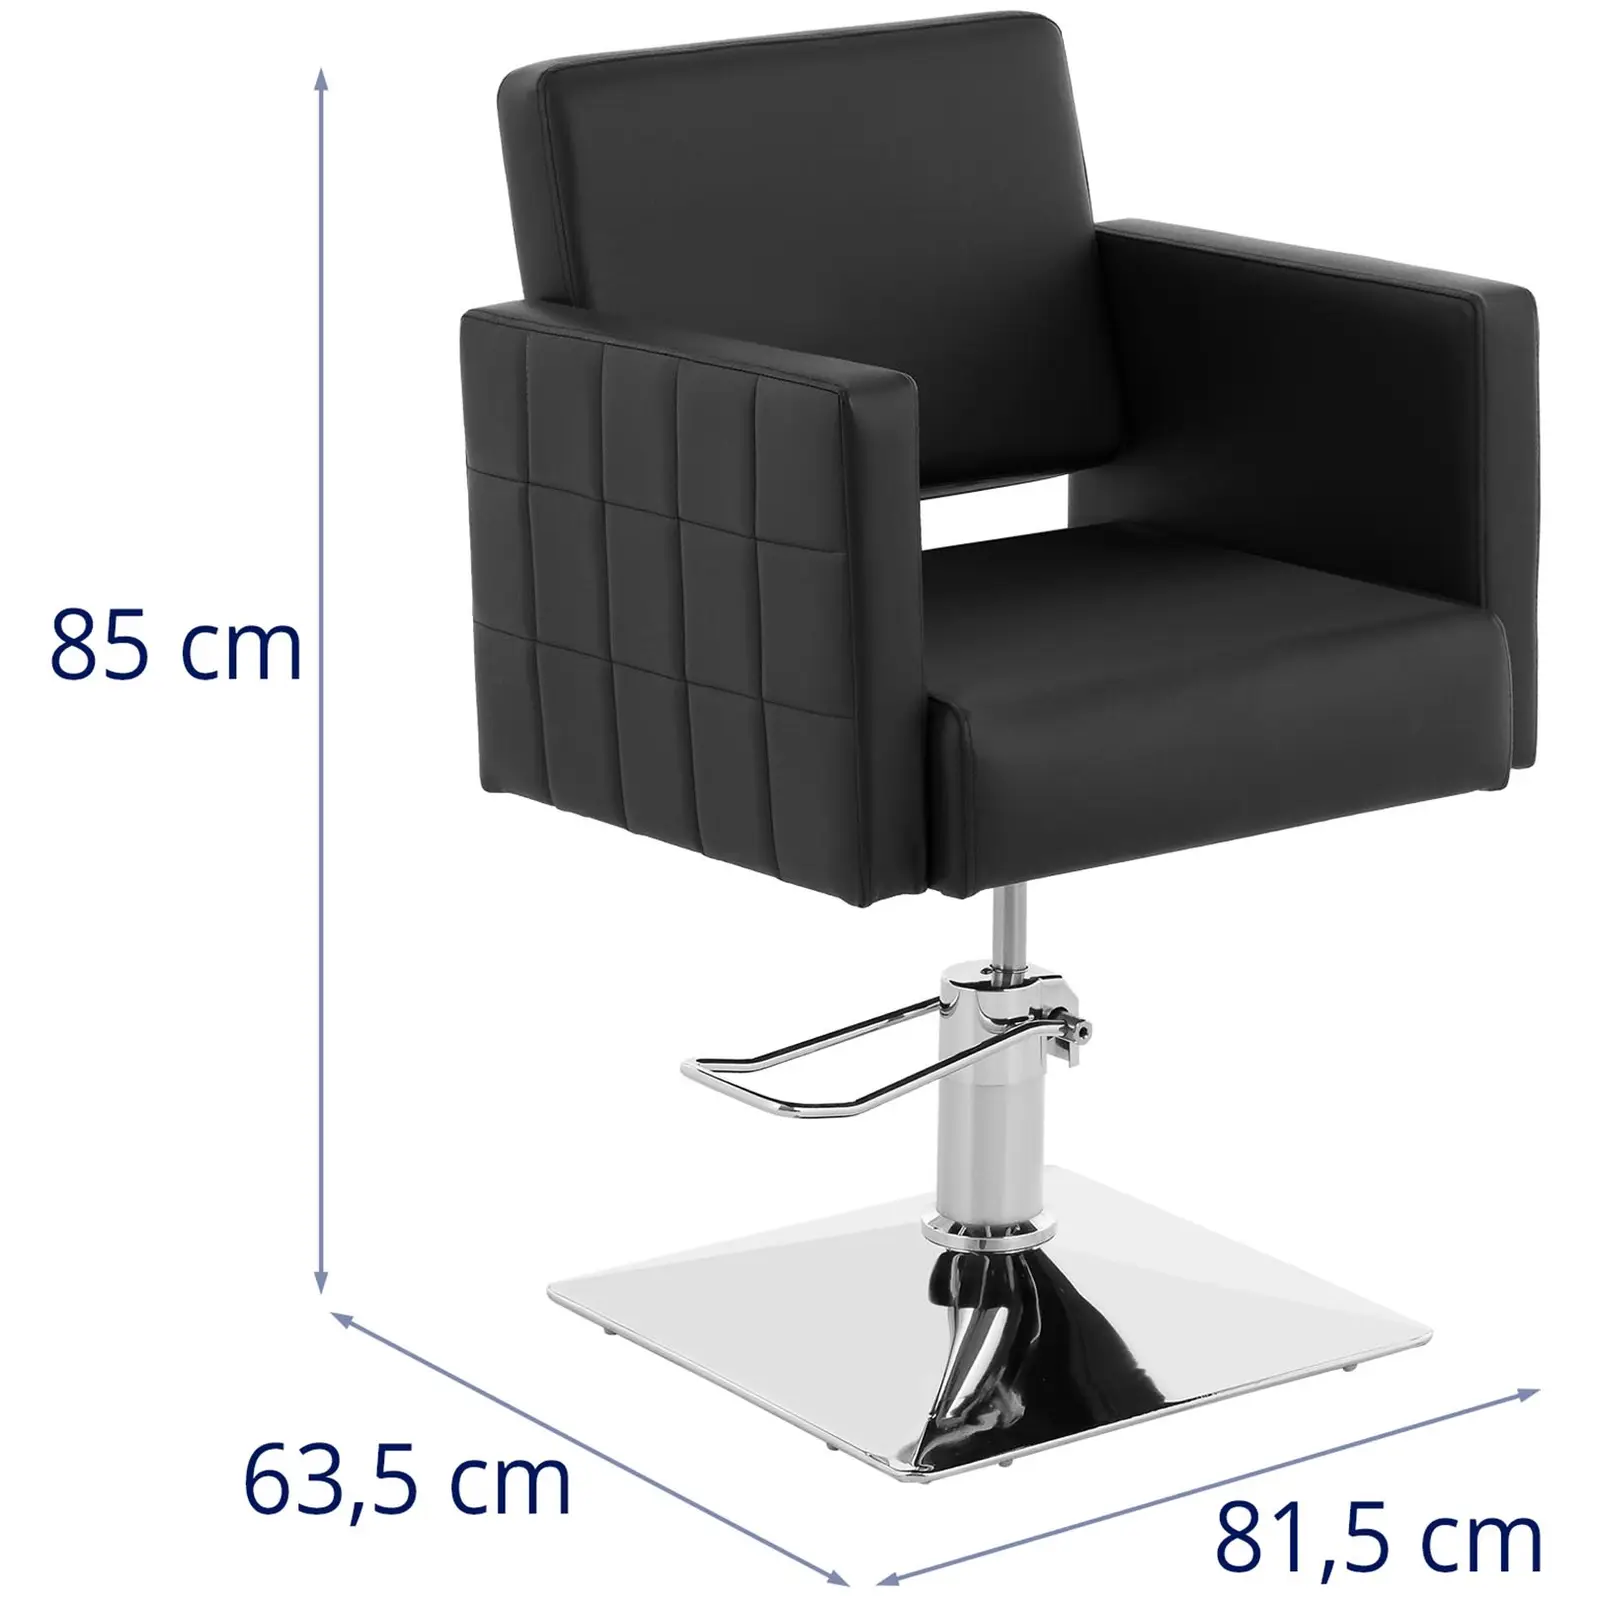 Cadeira de cabeleireiro com pousa-pés - 450 x 550 mm - 150 kg - Preto